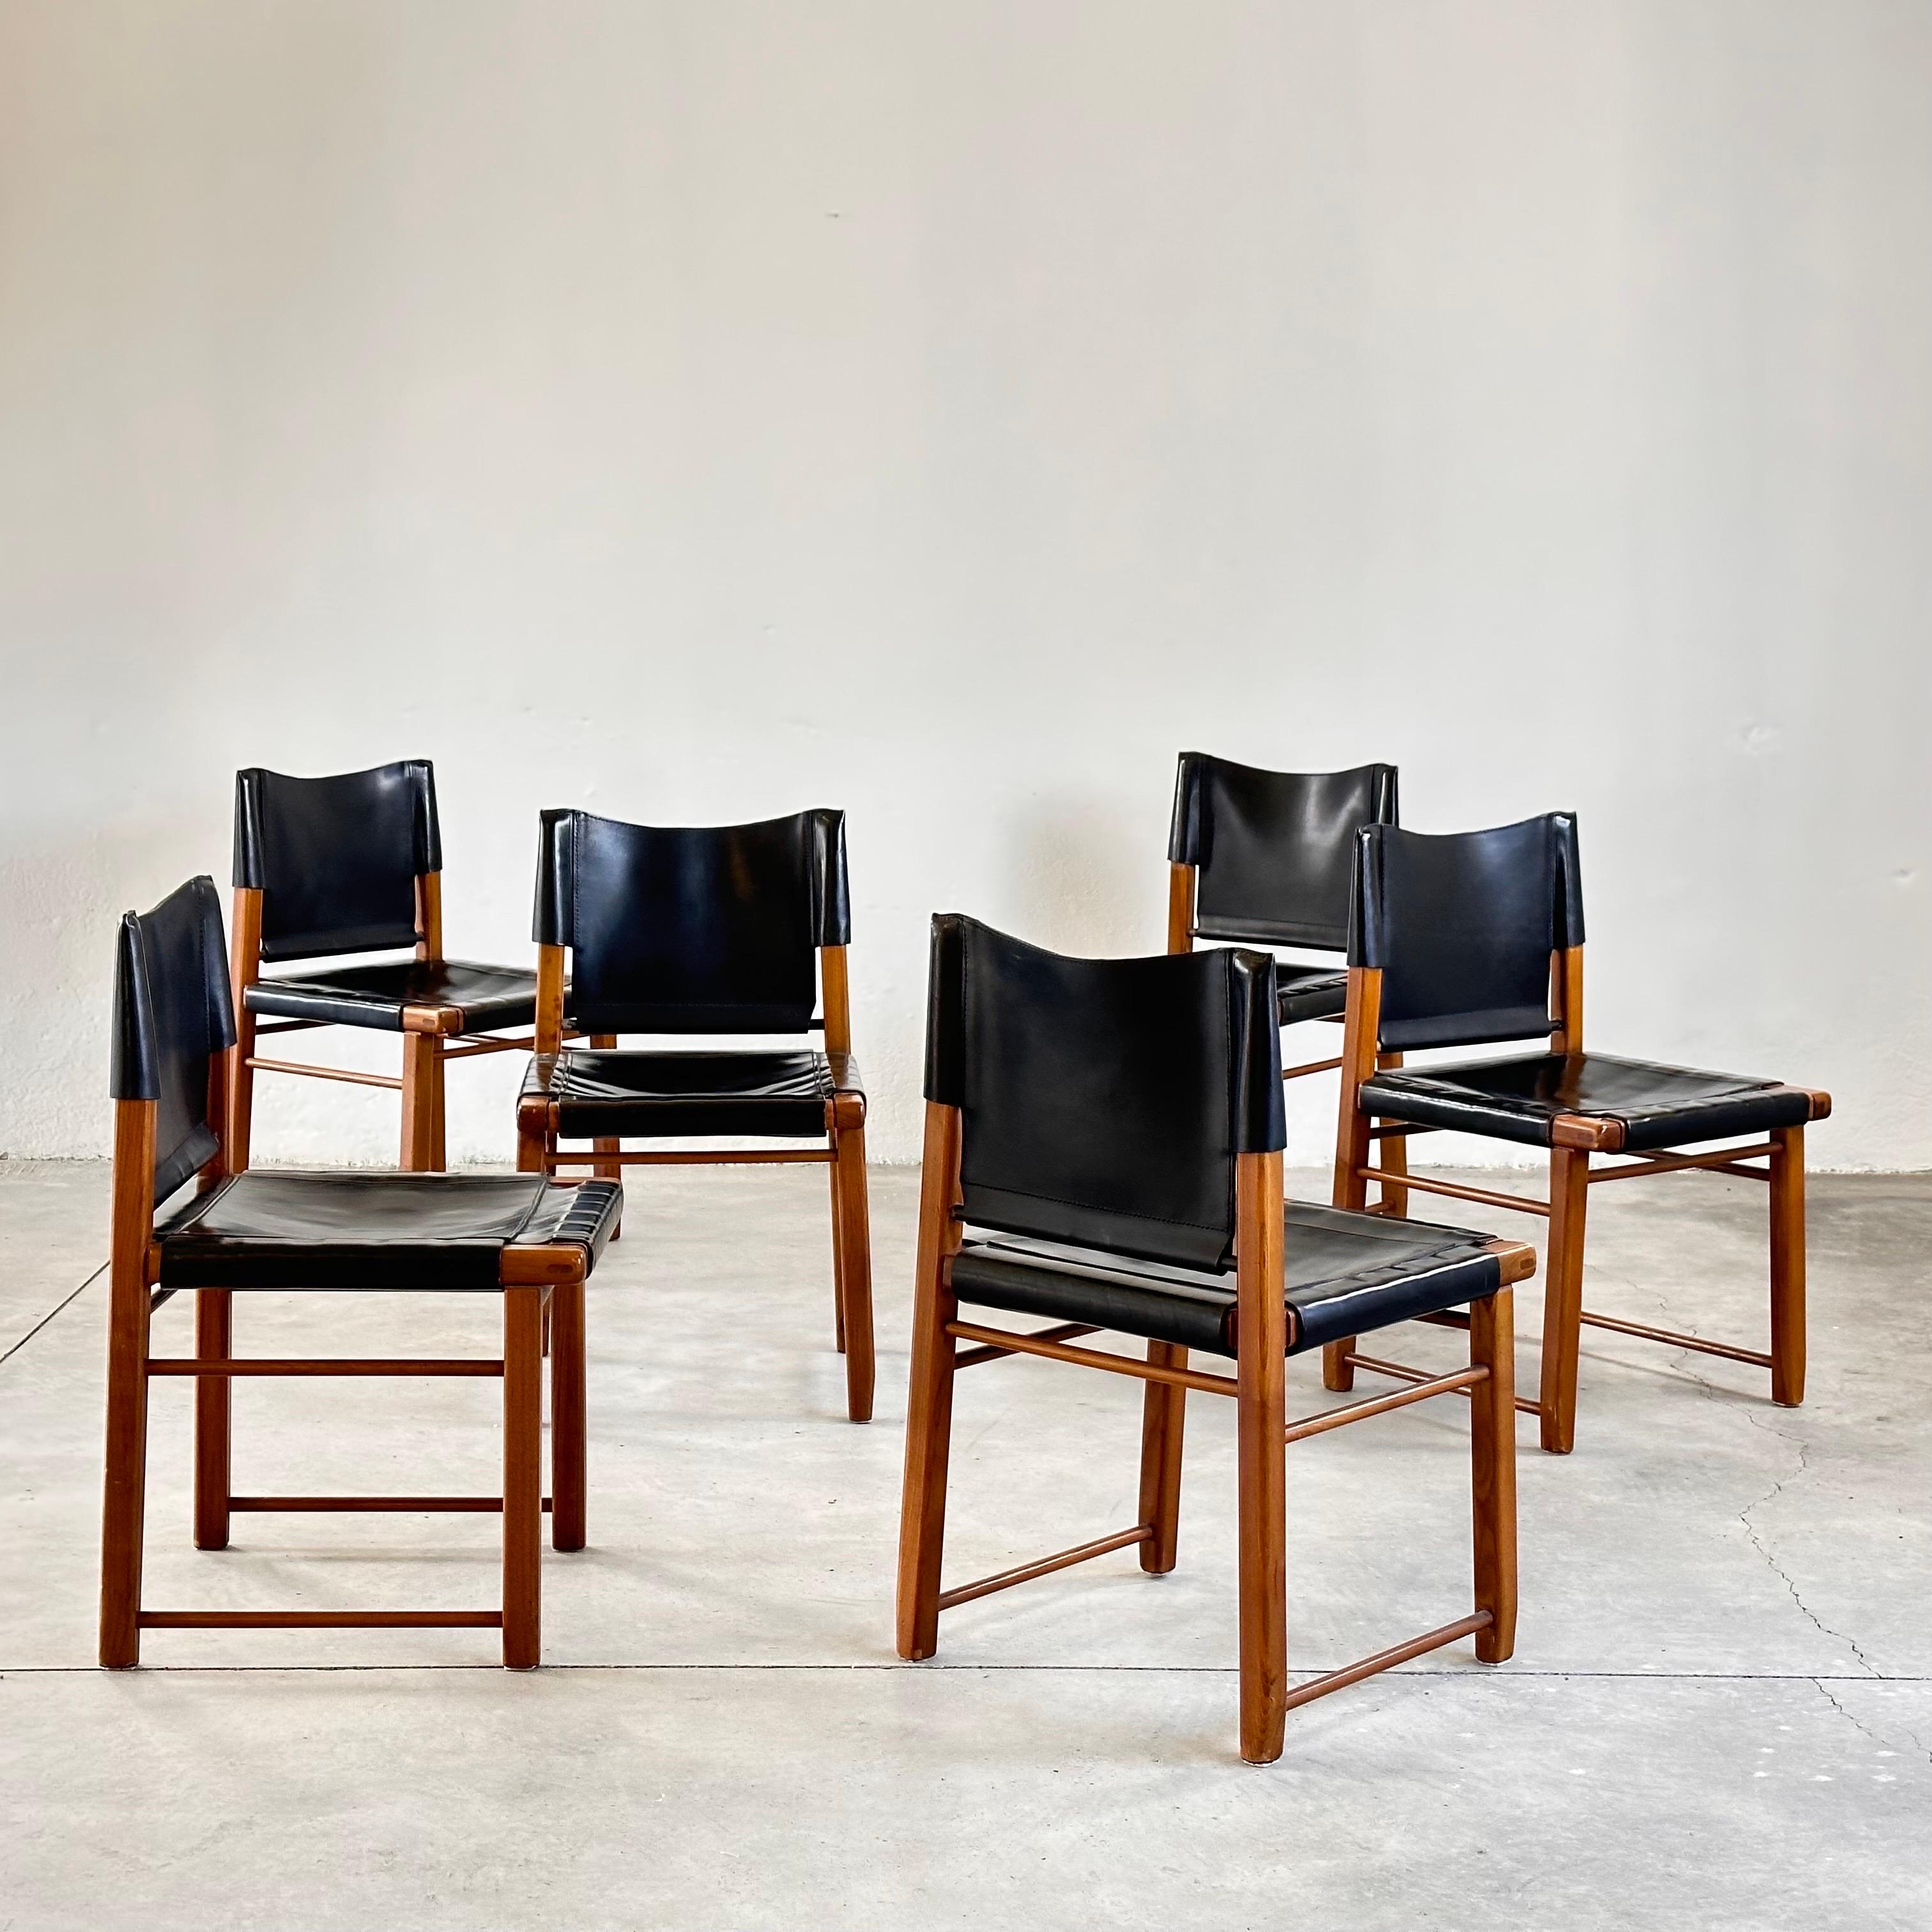 Schicke italienische Eleganz: Satz von sechs Esszimmerstühlen aus Nussbaum und schwarzem Leder, 1970er Jahre (Moderne der Mitte des Jahrhunderts)